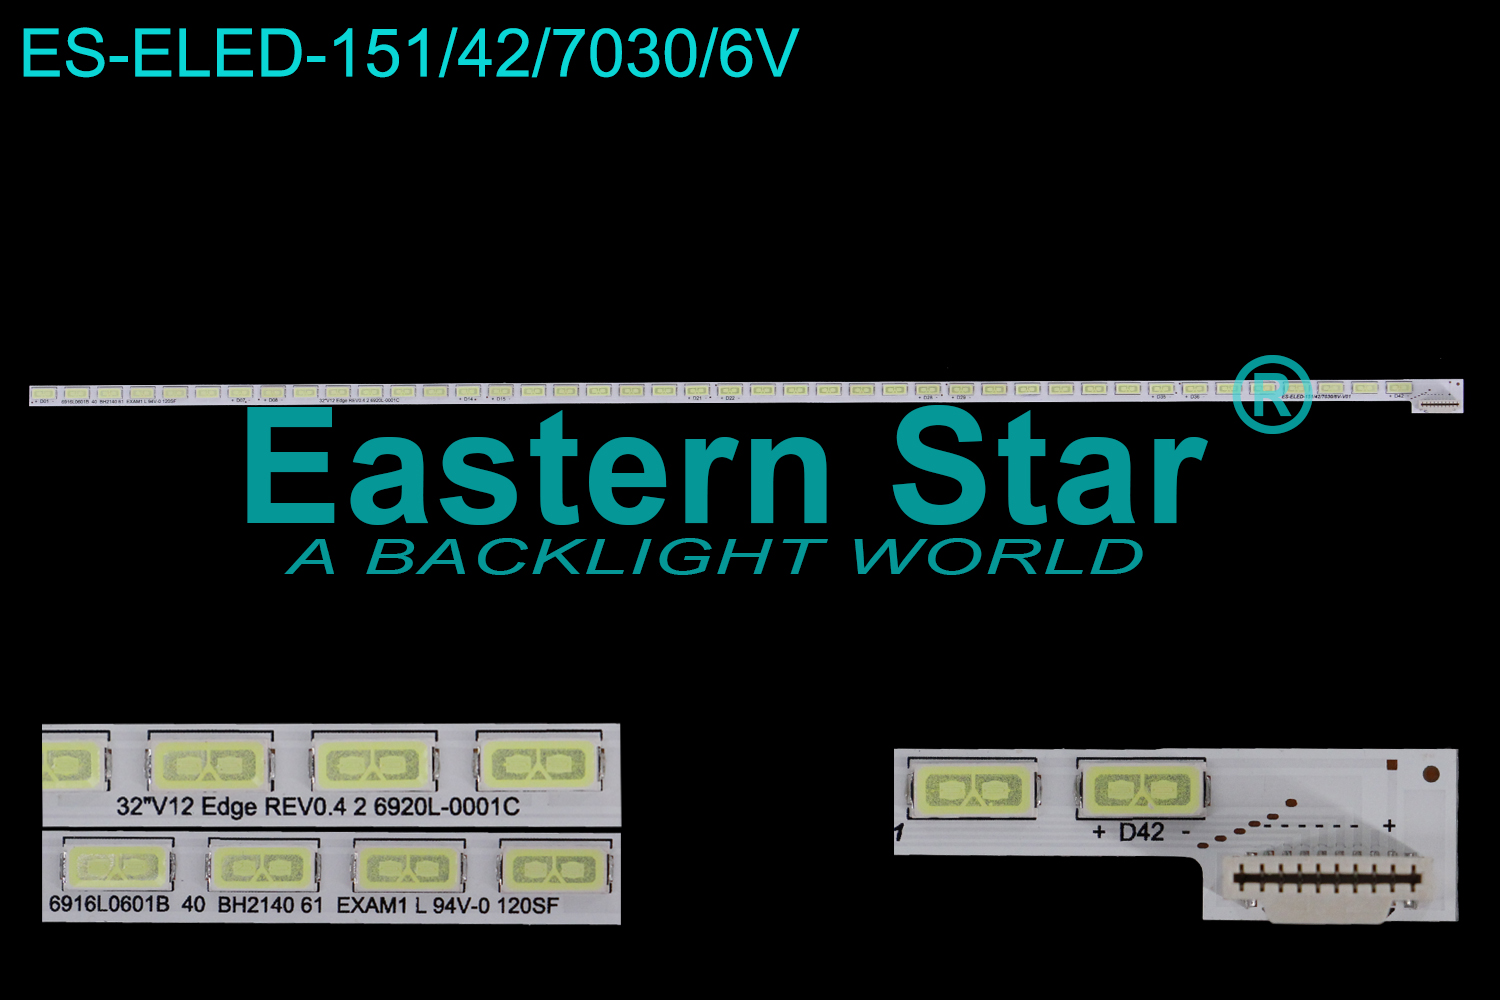 ES-ELED-151 ELED/EDGE TV backlight use for Lg 32'' 42LEDs 32'' V12 Edge REV1.1 1 6920L-0001C (1)